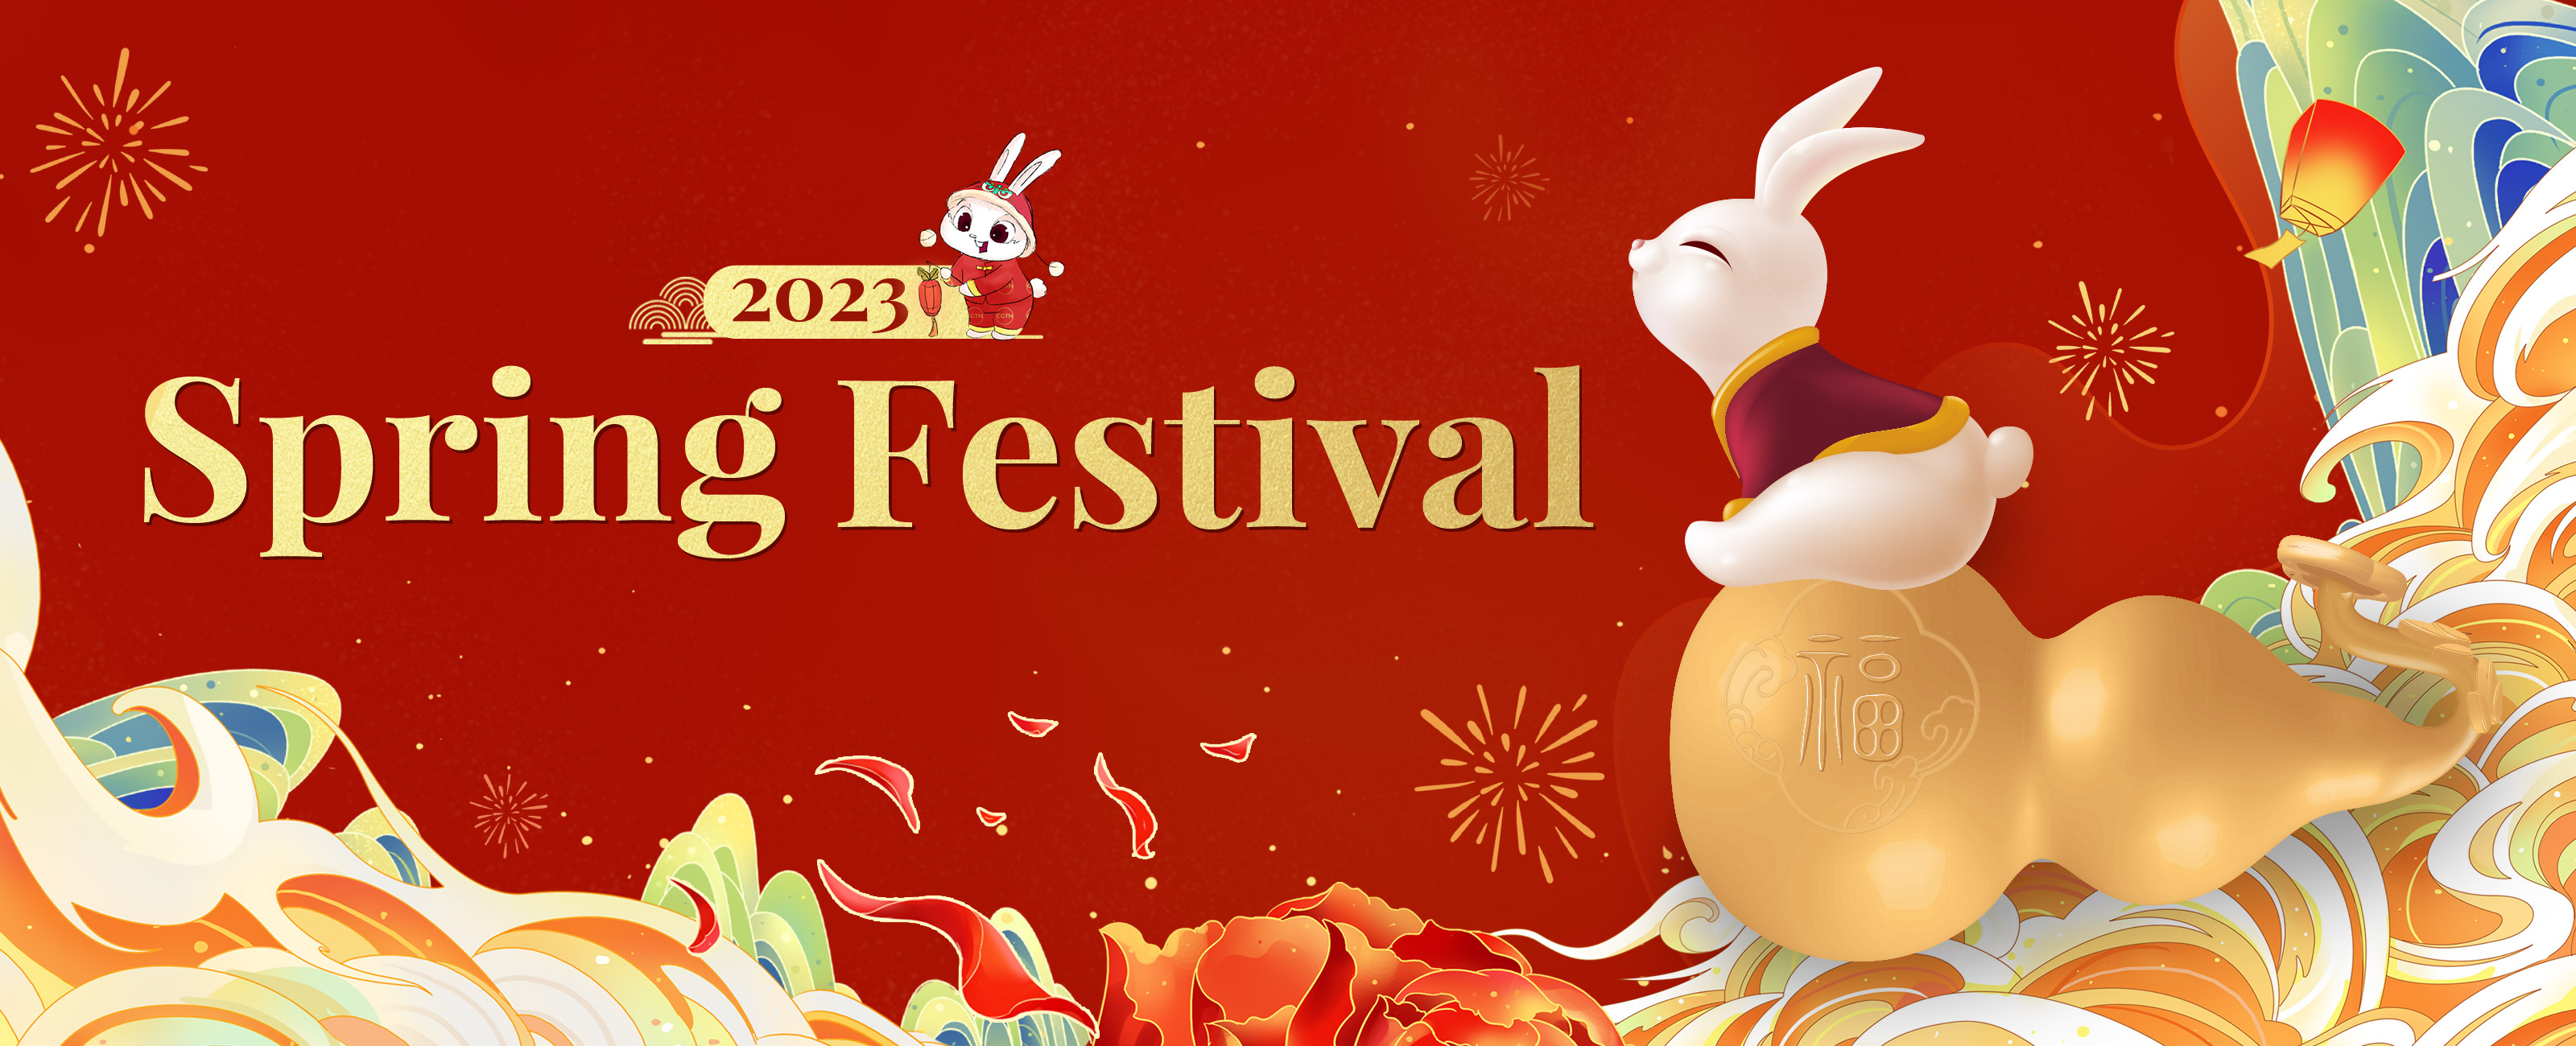 Spring Festival 2023